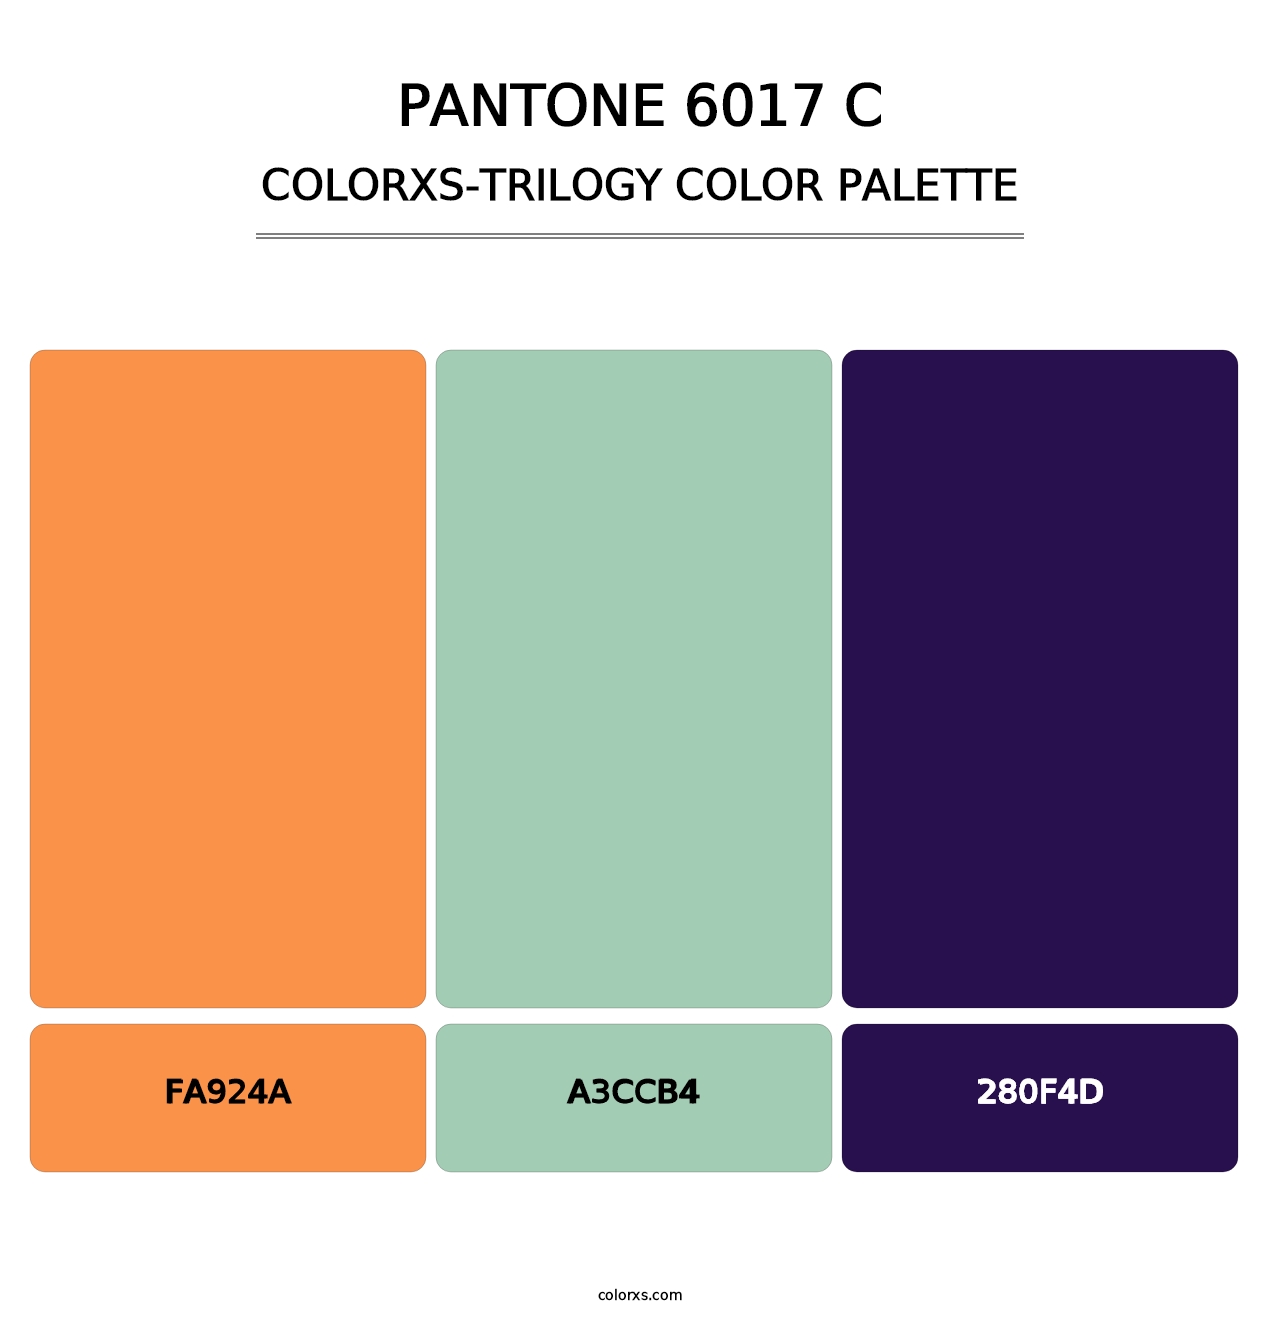 PANTONE 6017 C - Colorxs Trilogy Palette